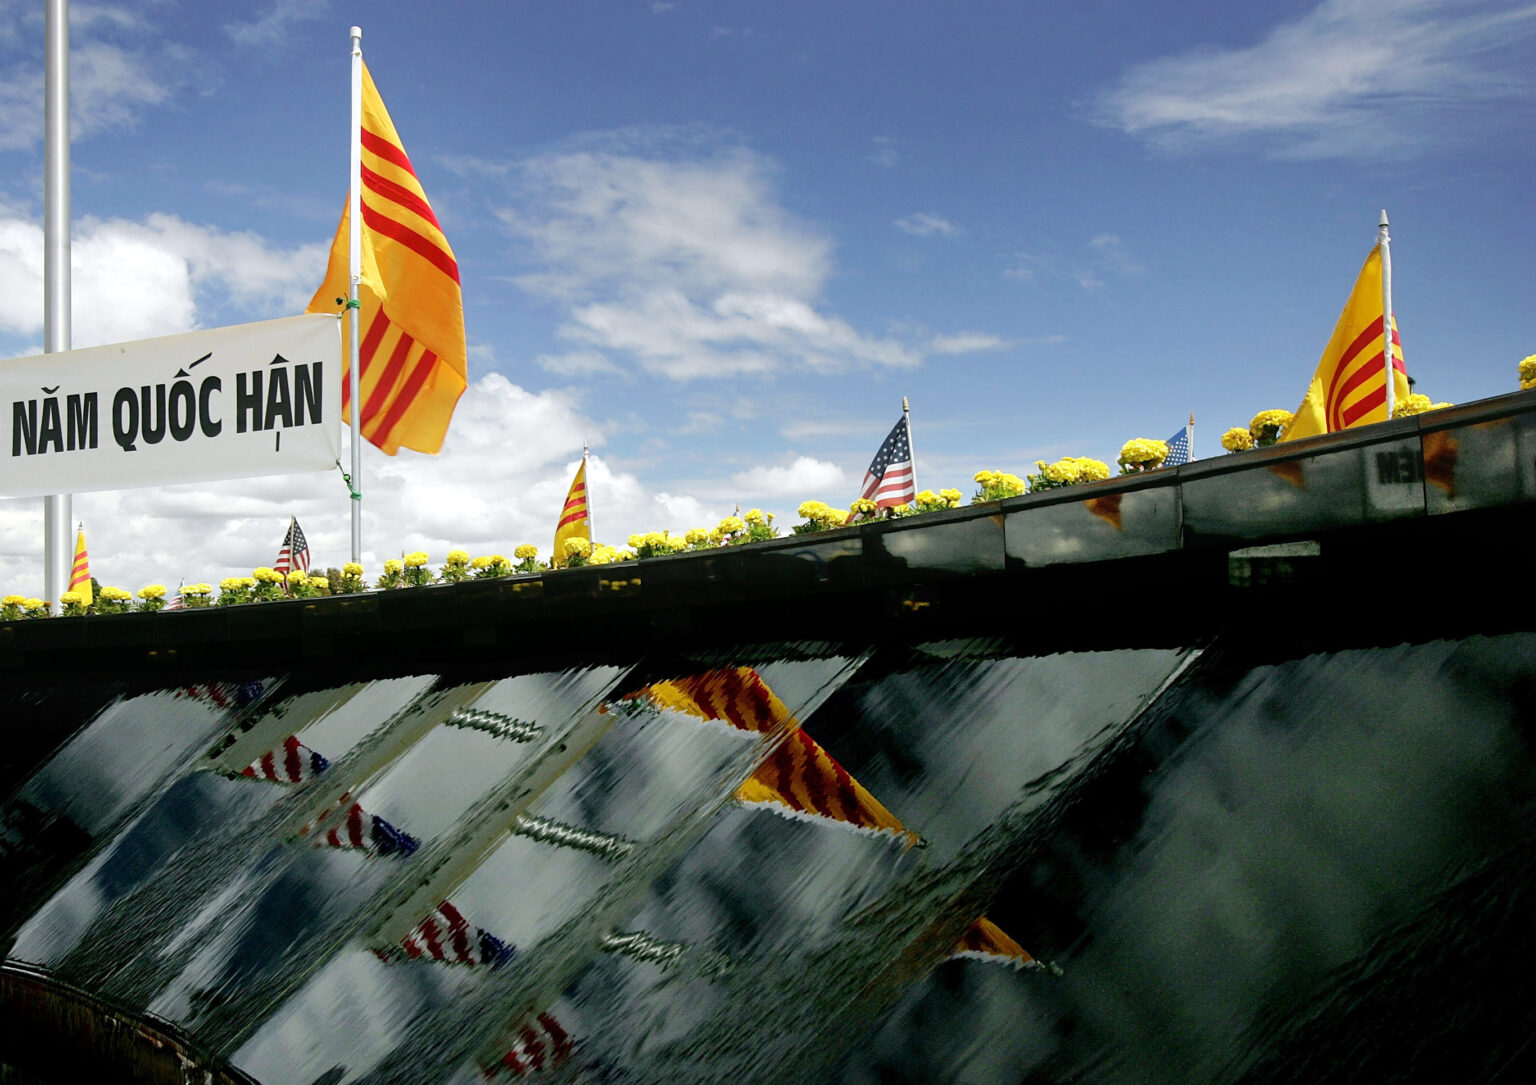 Ngày 30 Tháng Tư, người Việt ở hải ngoại gọi là ngày mất nước, ngày quốc hận. Ảnh minh họa: David McNew/Getty Images